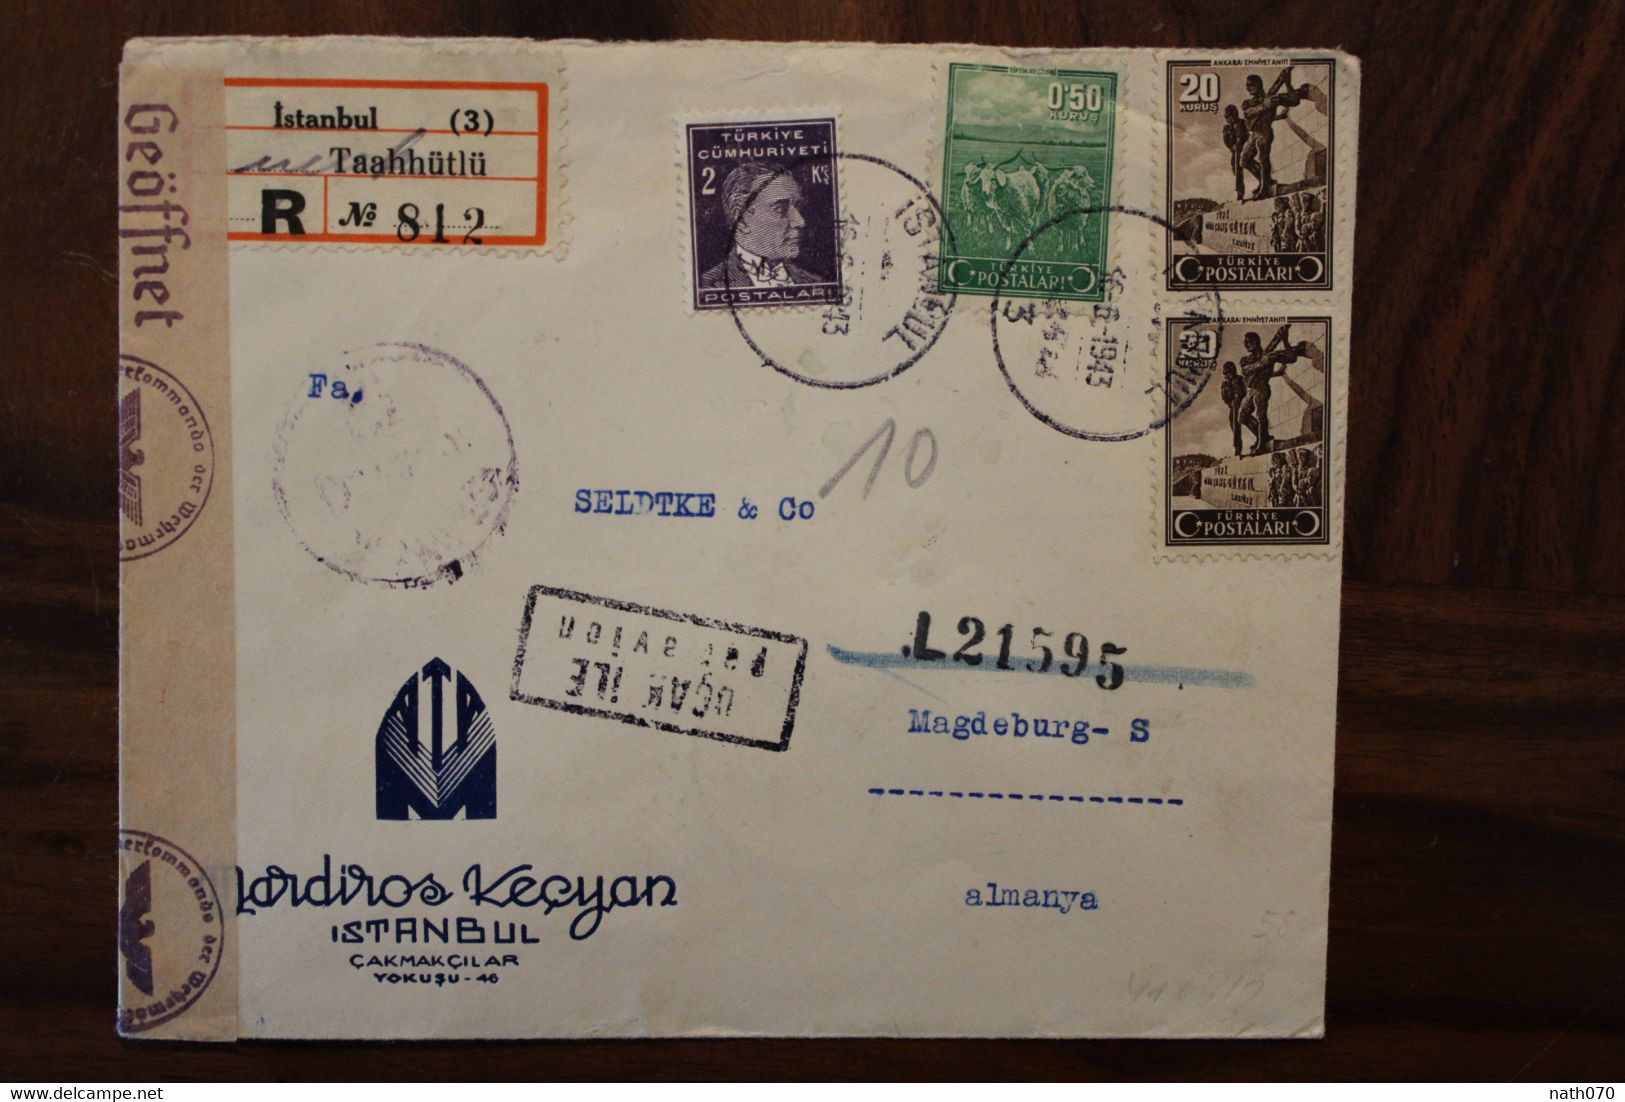 Turquie 1943 OKW Censure Türkei Air Mail Cover Enveloppe Paire Par Avion Allemagne Turkey Türkiye Ww2 Wk2 - Briefe U. Dokumente